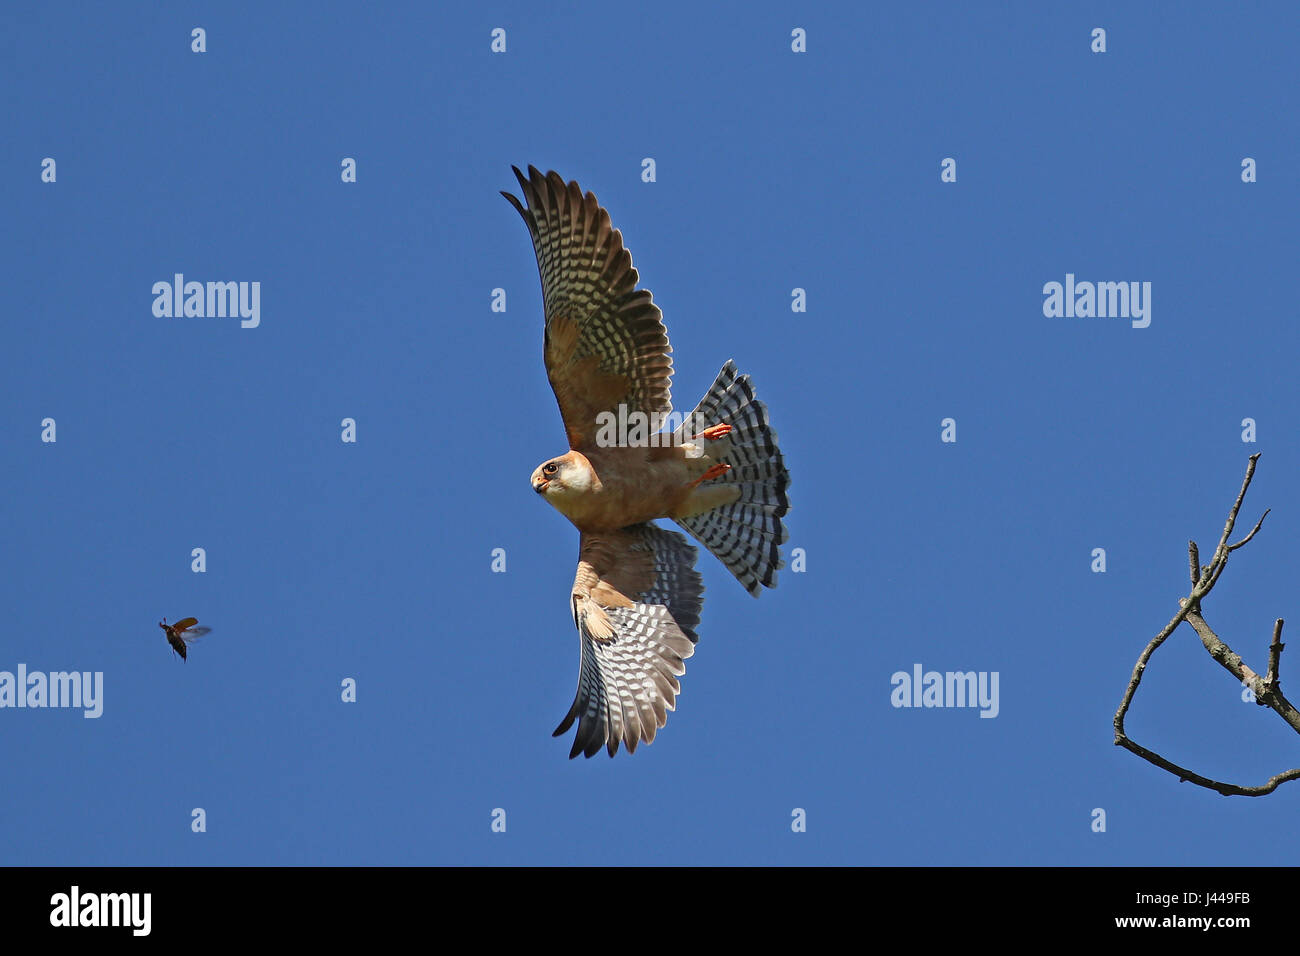 Hembra rojo-footed Falcon, Falco Vespertinus, saliendo de una rama de árbol para capturar un gran escarabajo en vuelo contra el cielo azul Foto de stock